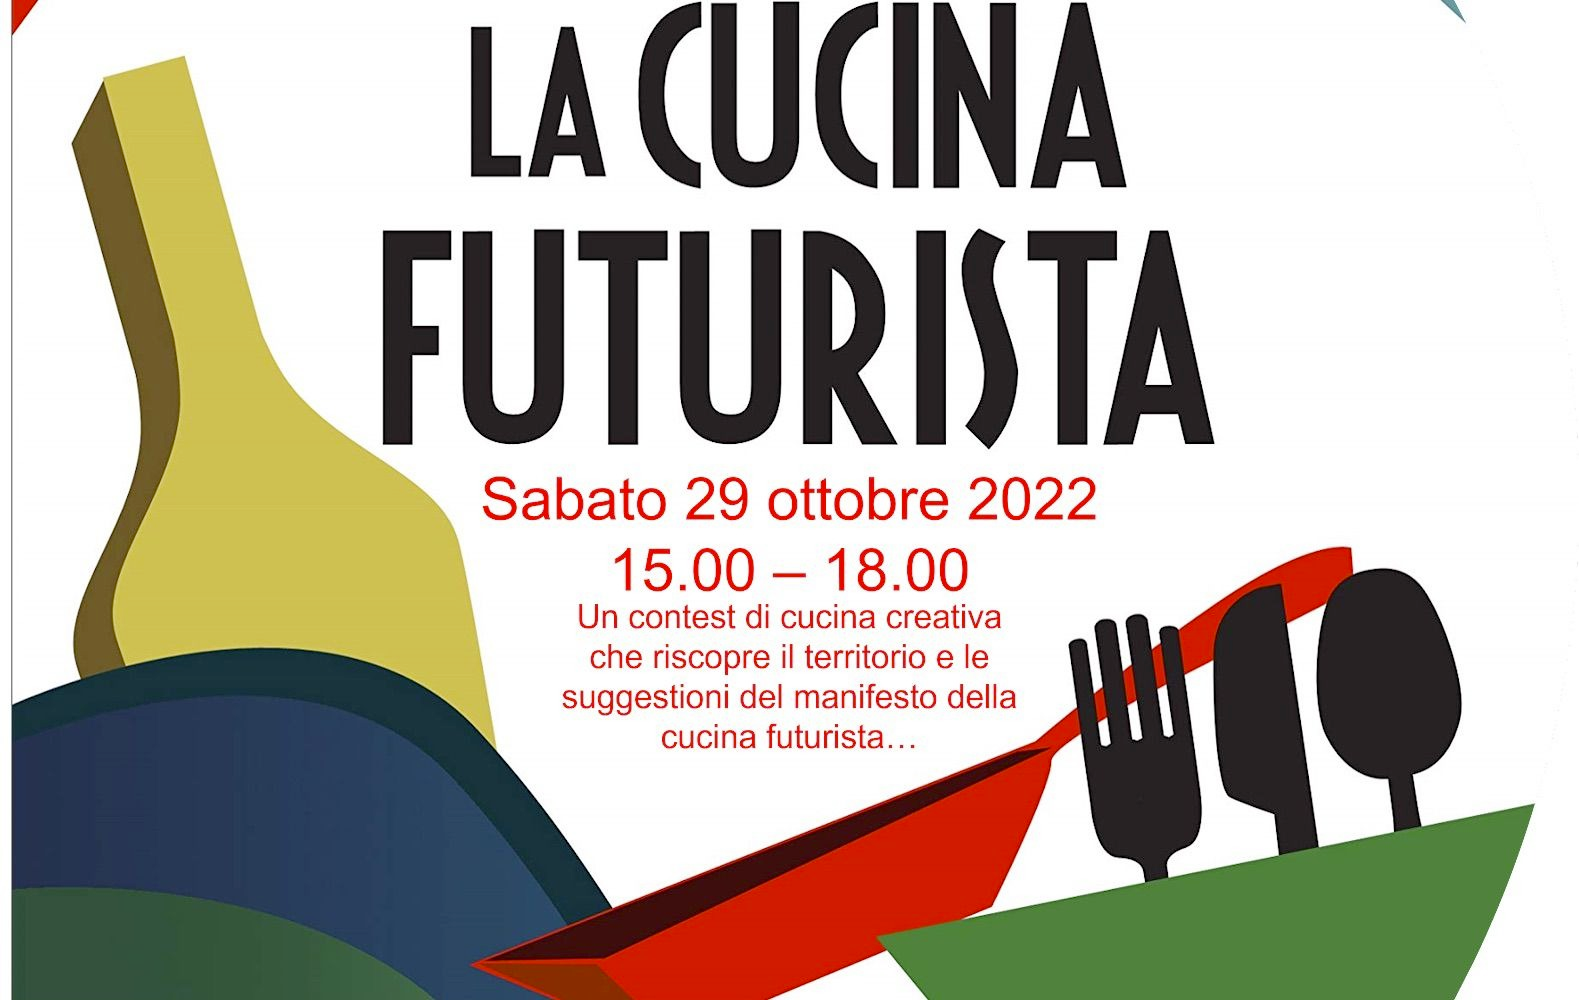 CUCINA FUTURISTA by 2050